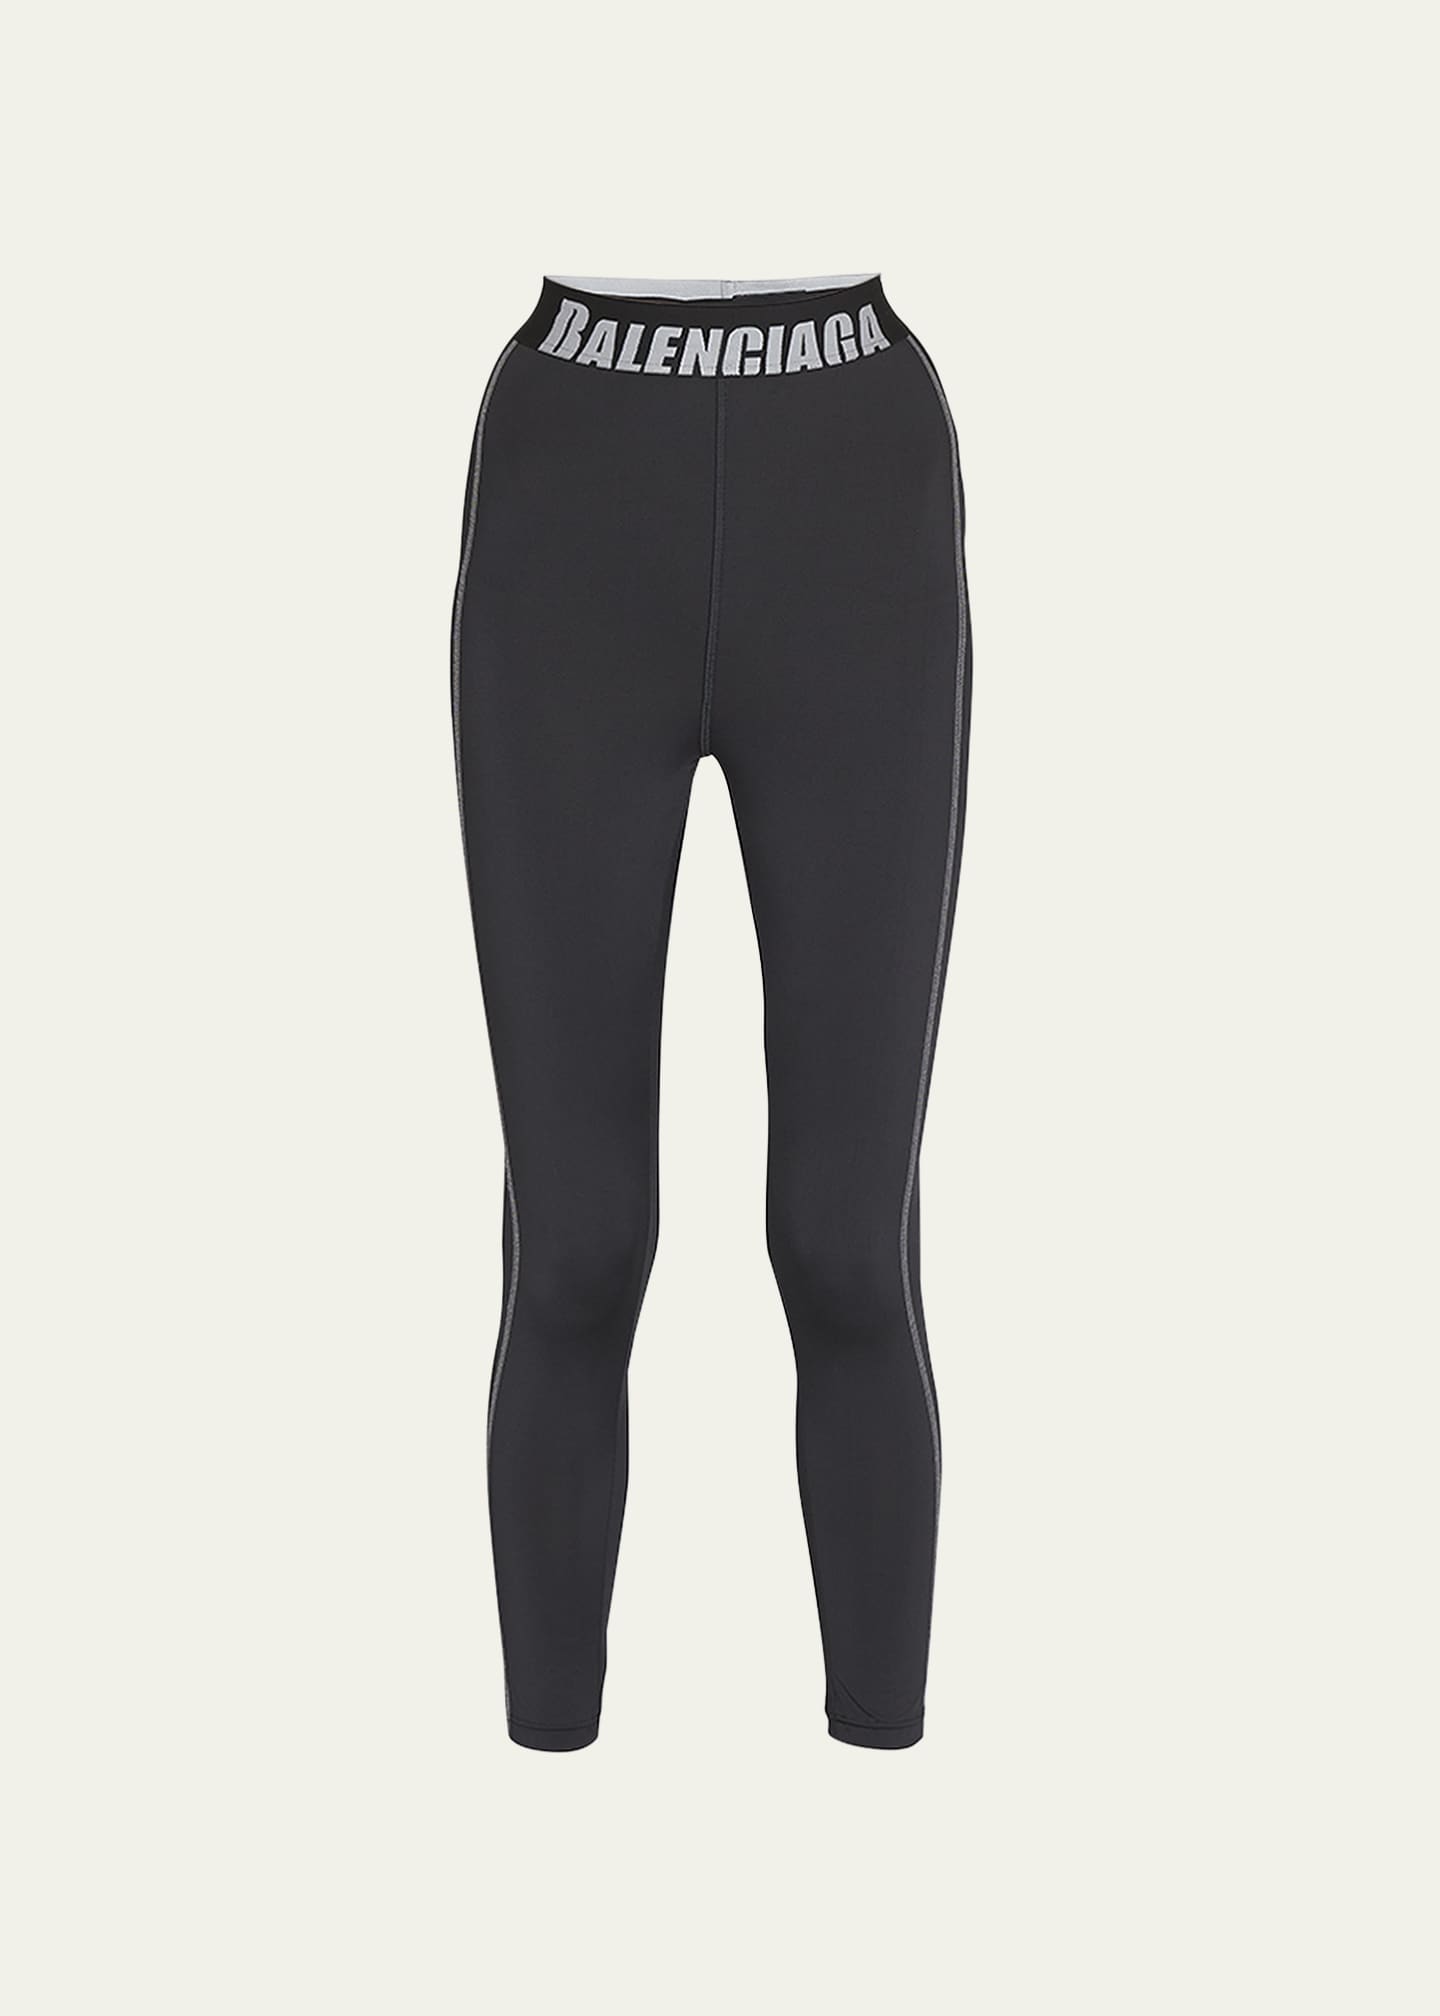 BALENCIAGA, Side Logo Leggings, Women